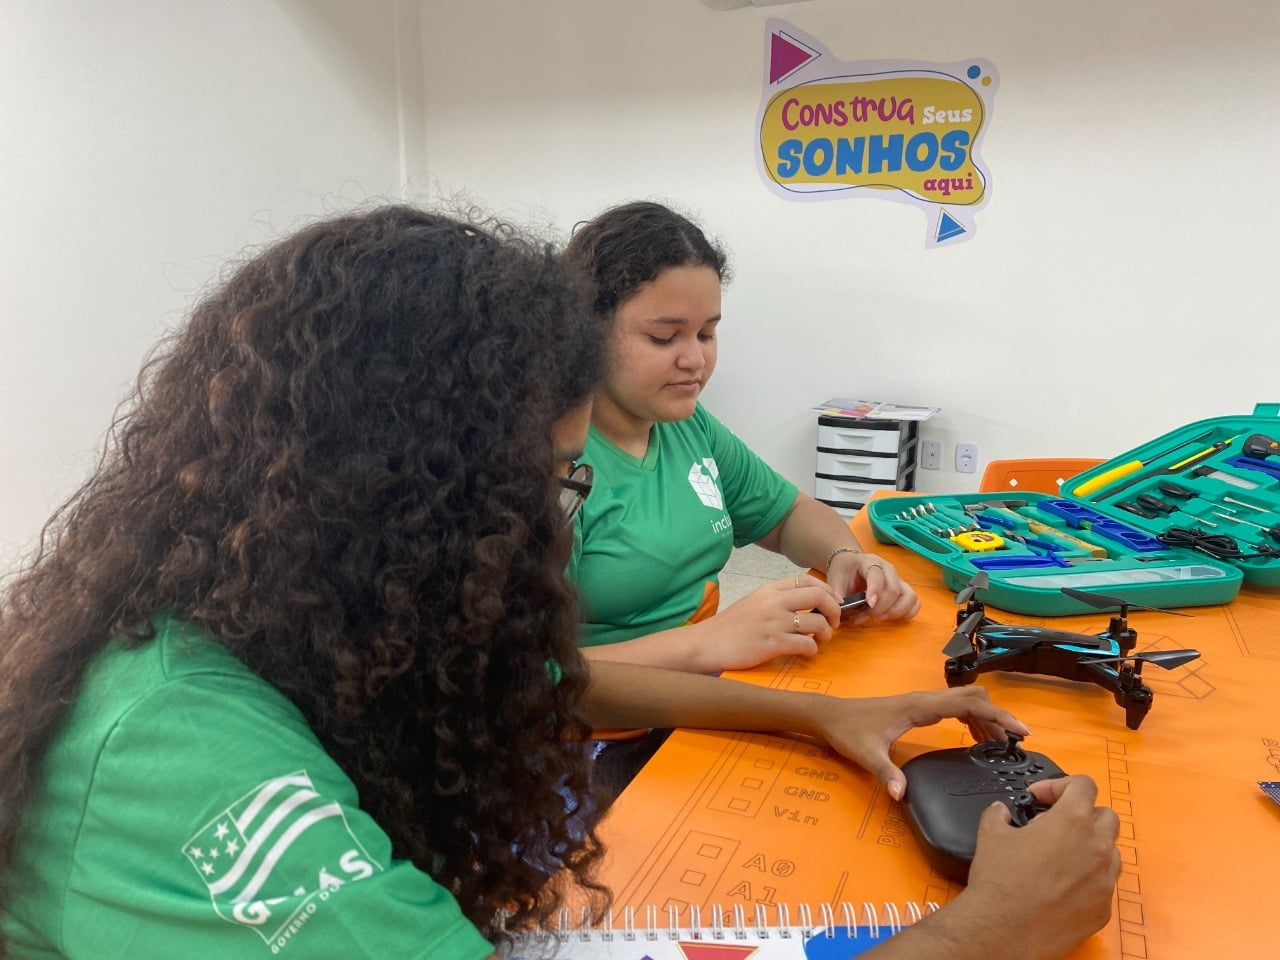 Governo de Goiás oferece curso gratuito de robótica para jovens: incentivo à formação de futuros profissionais do mercado de tecnologia